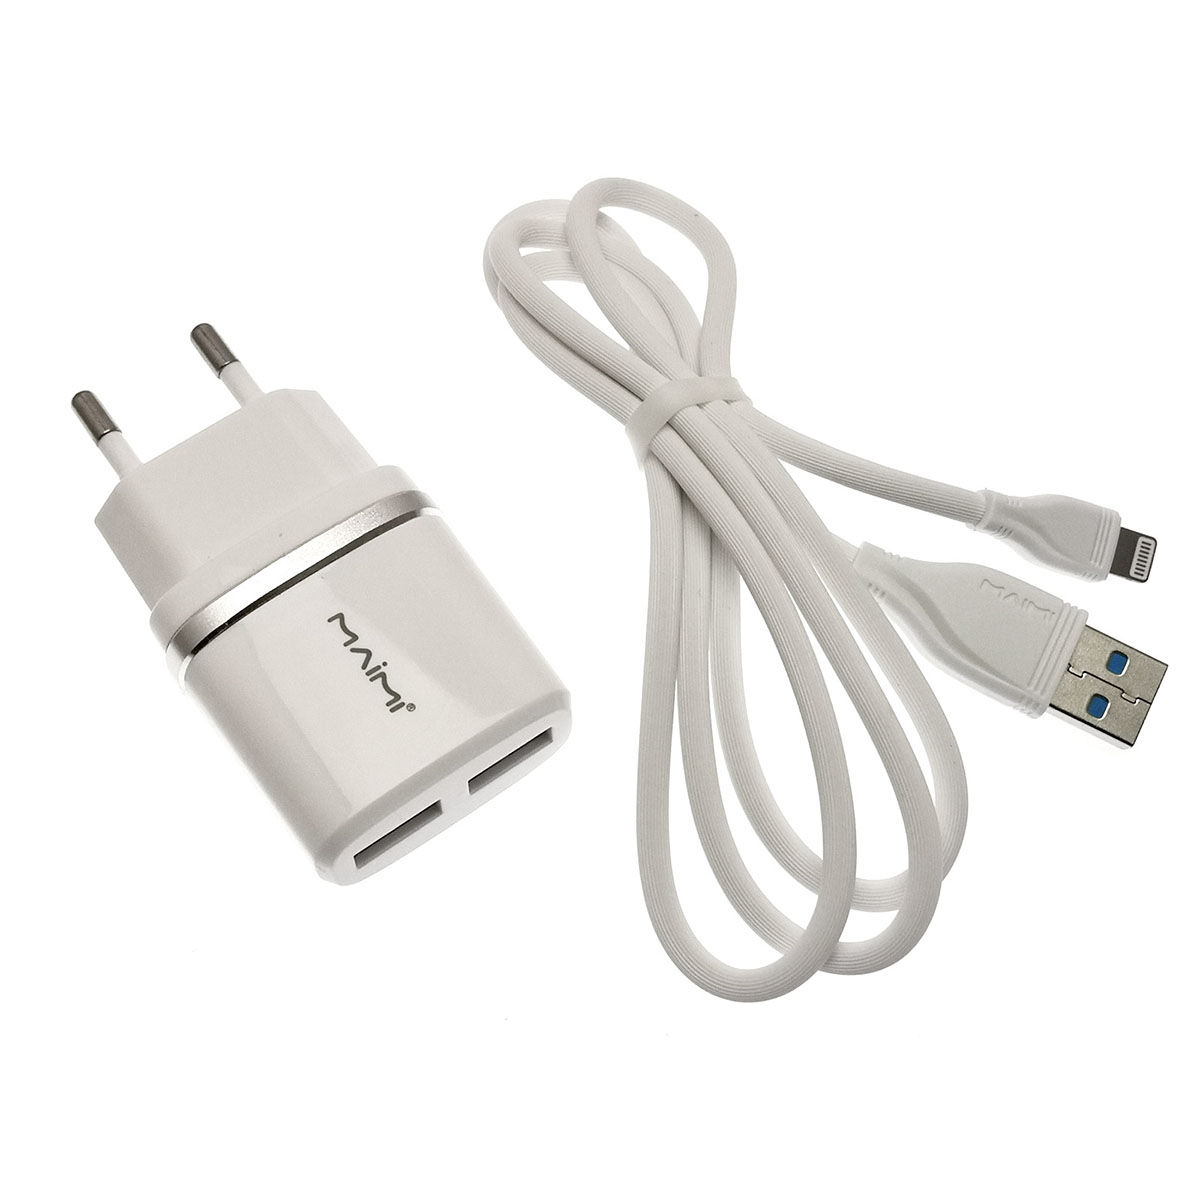 MAIMI T8 2 в 1 СЗУ (сетевое зарядное устройство) на 2 USB порт 5V-2.4A + кабель APPLE Lightning 8-pin iOS, цвет белый.